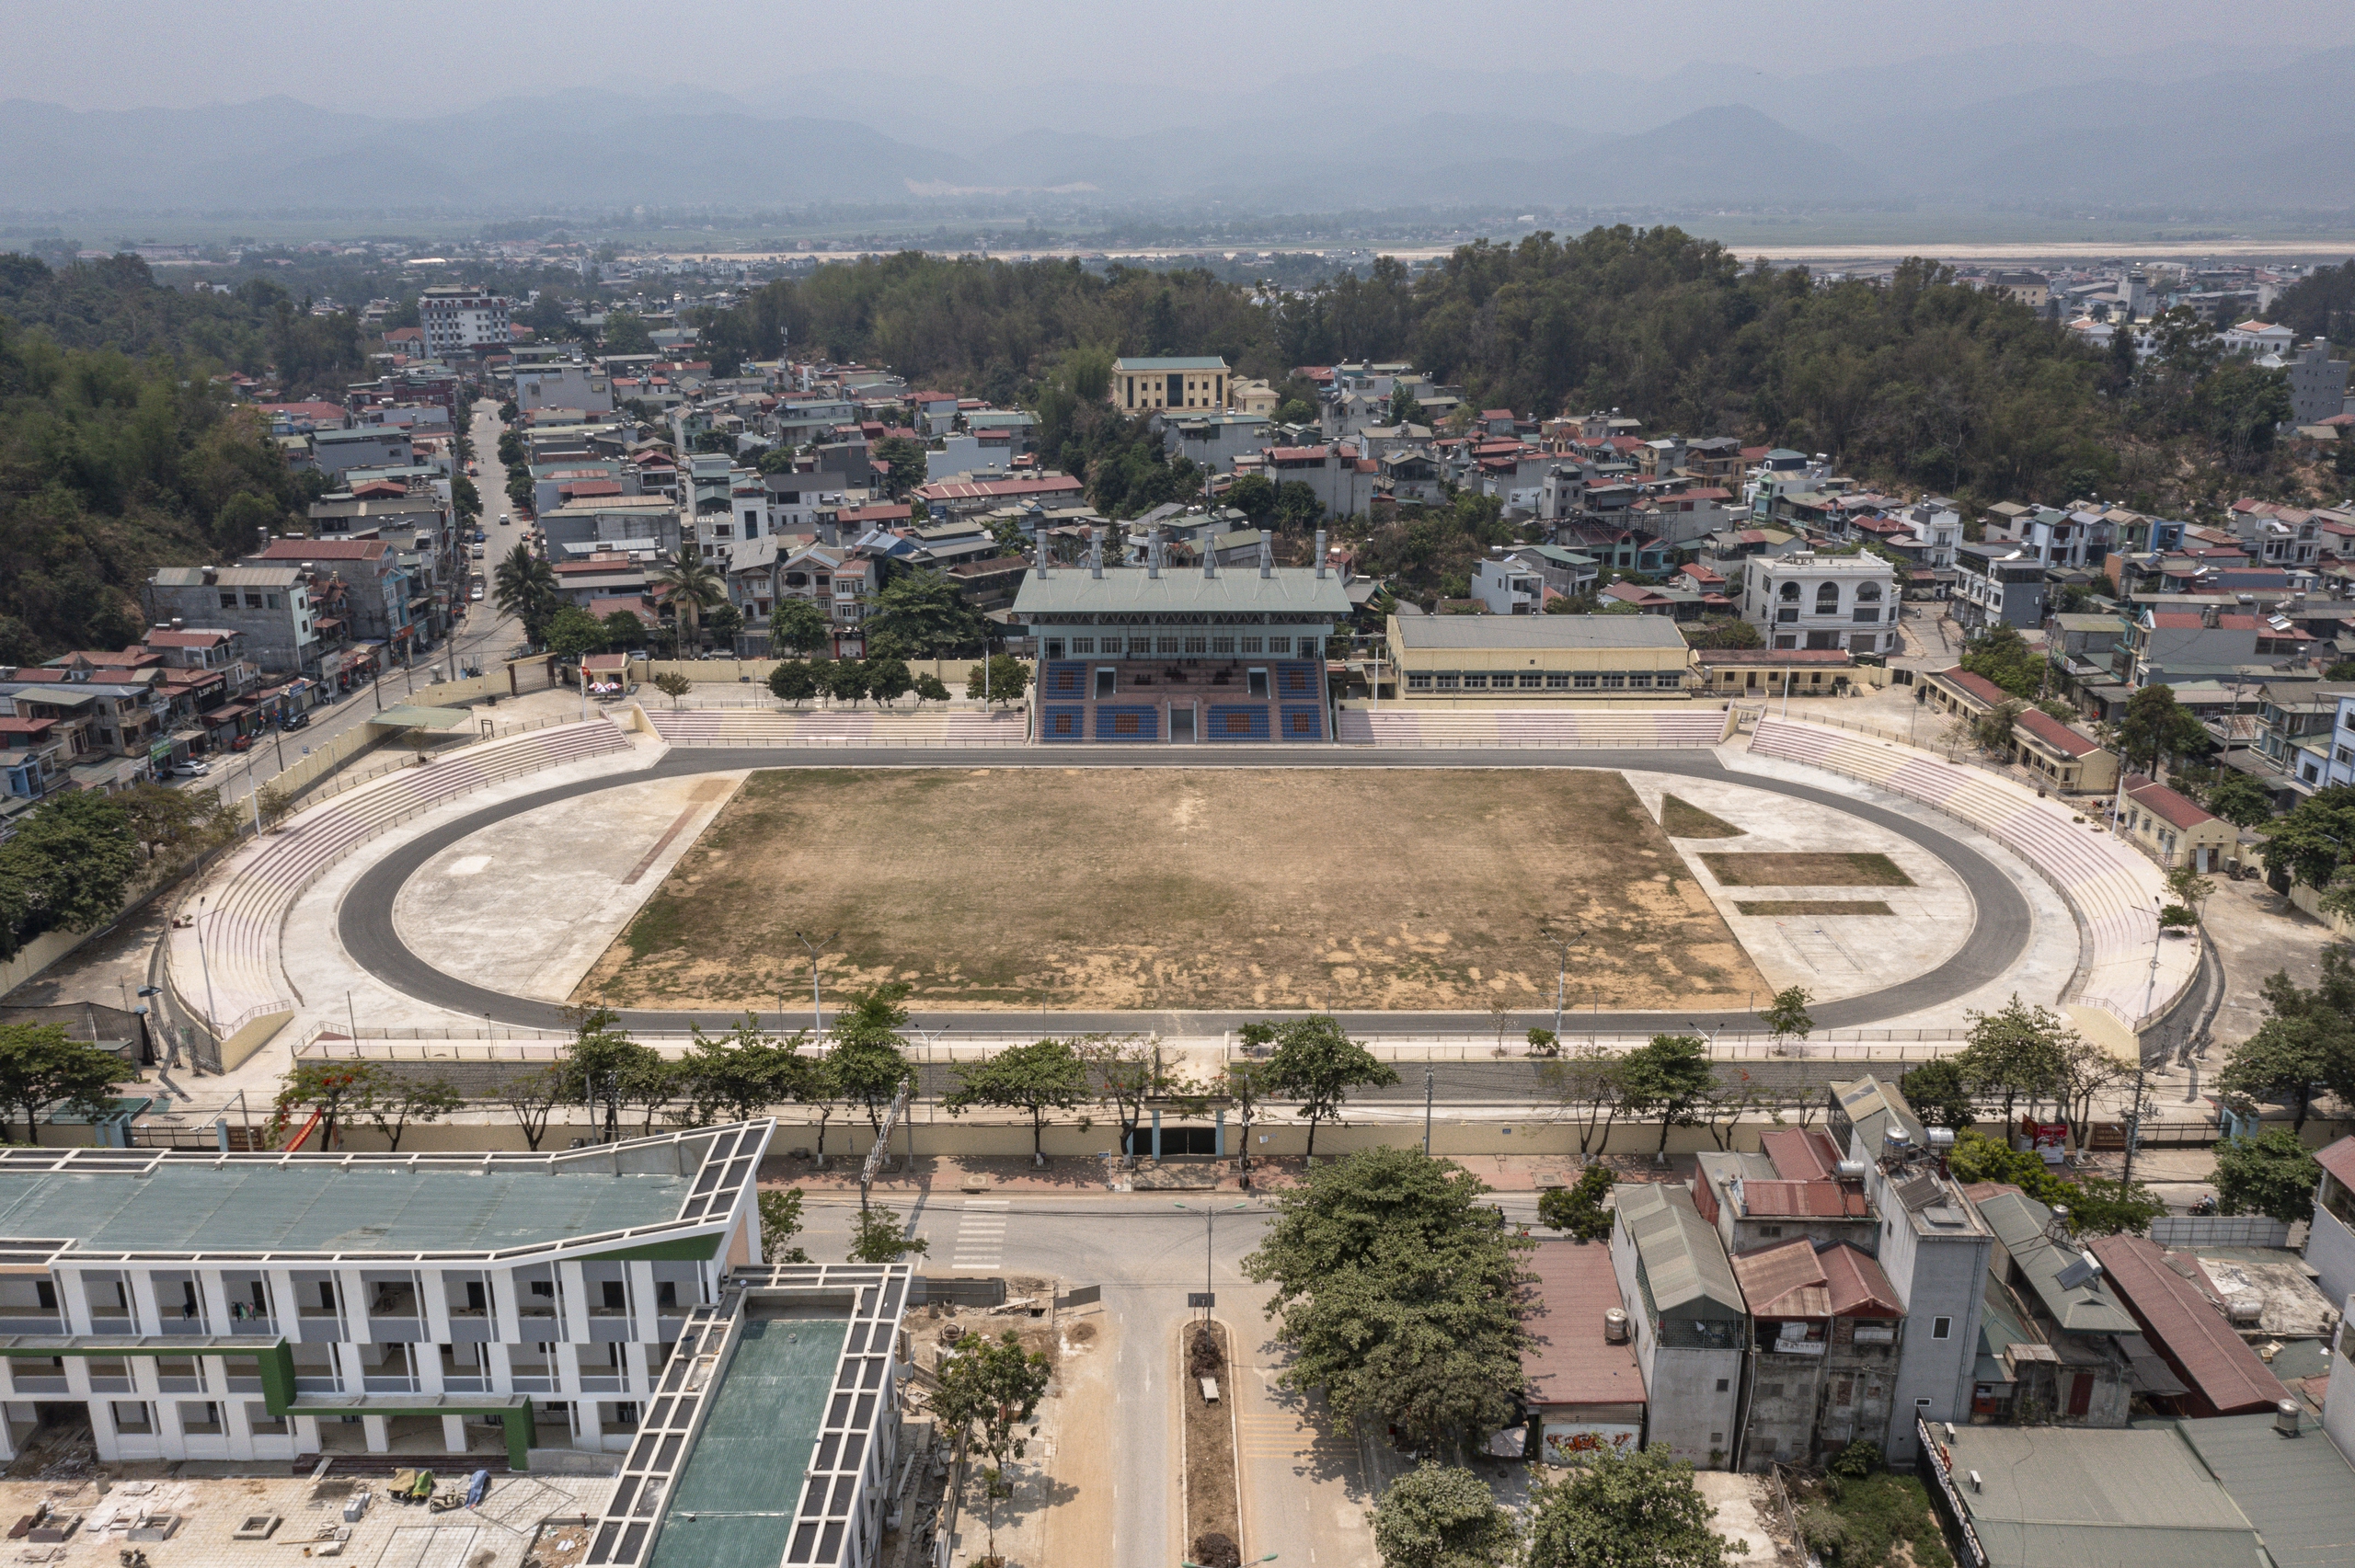 Sân vận động Điện Biên được chọn làm nơi tổ chức lễ kỷ niệm 70 năm Chiến thắng Điện Biên Phủ, được đầu từ 14 tỉ đồng để cải tạo mặt sân, thay thế một số hạng mục, thiết bị đã xuống cấp